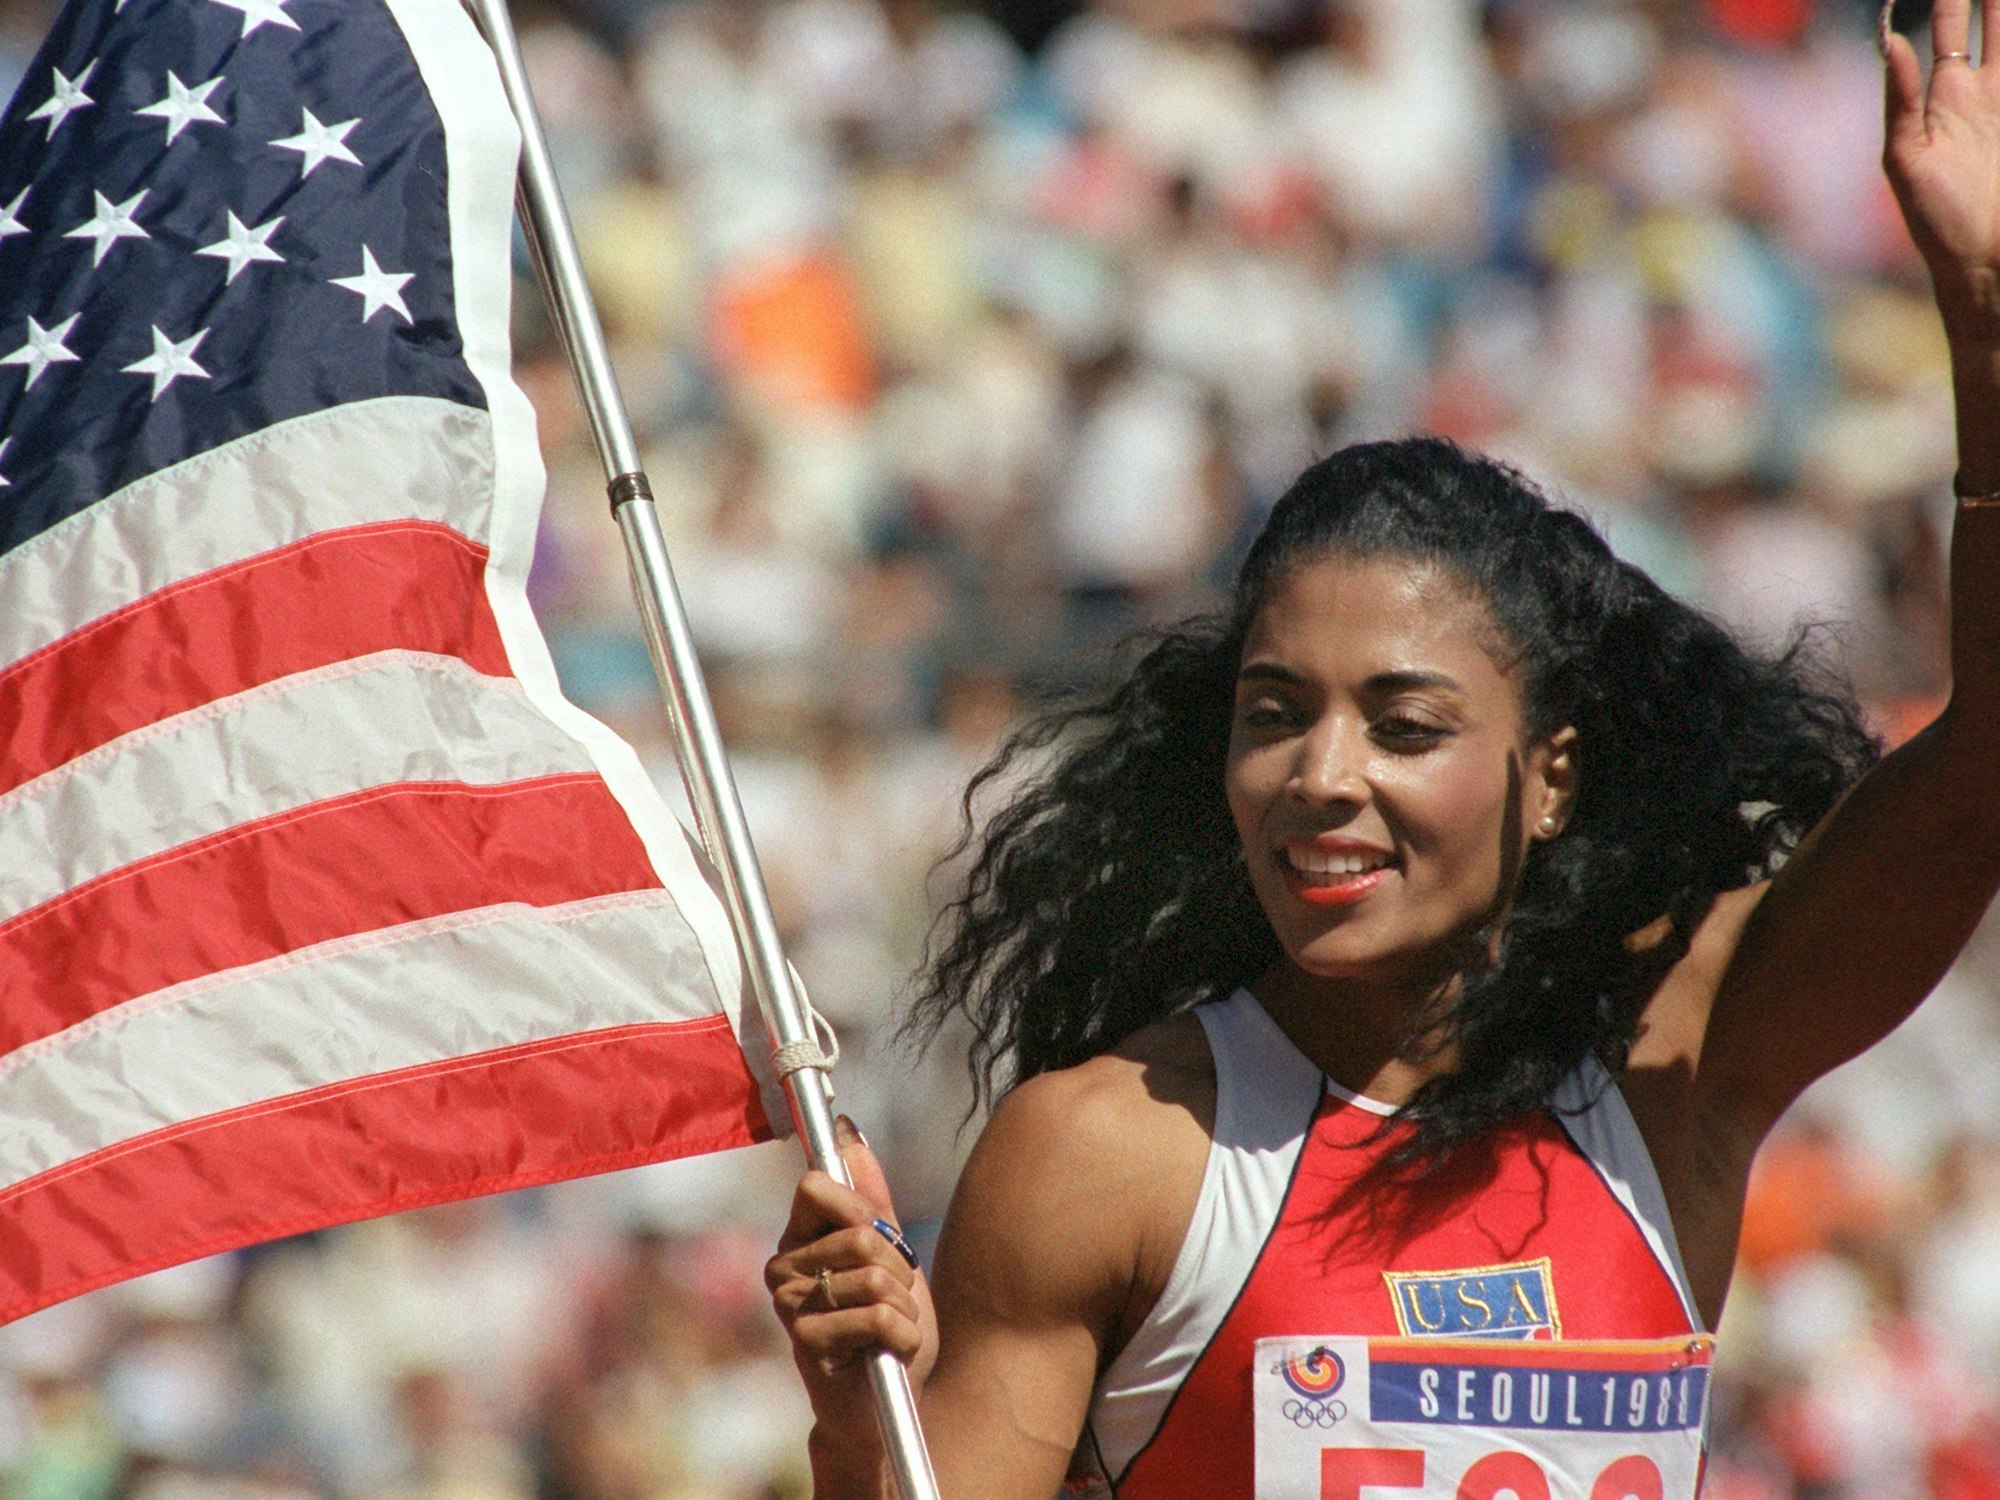 Die amerikanische Sprinterin Florence Griffith-Joyner präsentiert sich stolz und glücklich mit Flagge, nachdem sie bei den Olympischen Sommerspielen in Seoul im 100-m-Lauf der Frauen die Goldmedaille errungen hat.